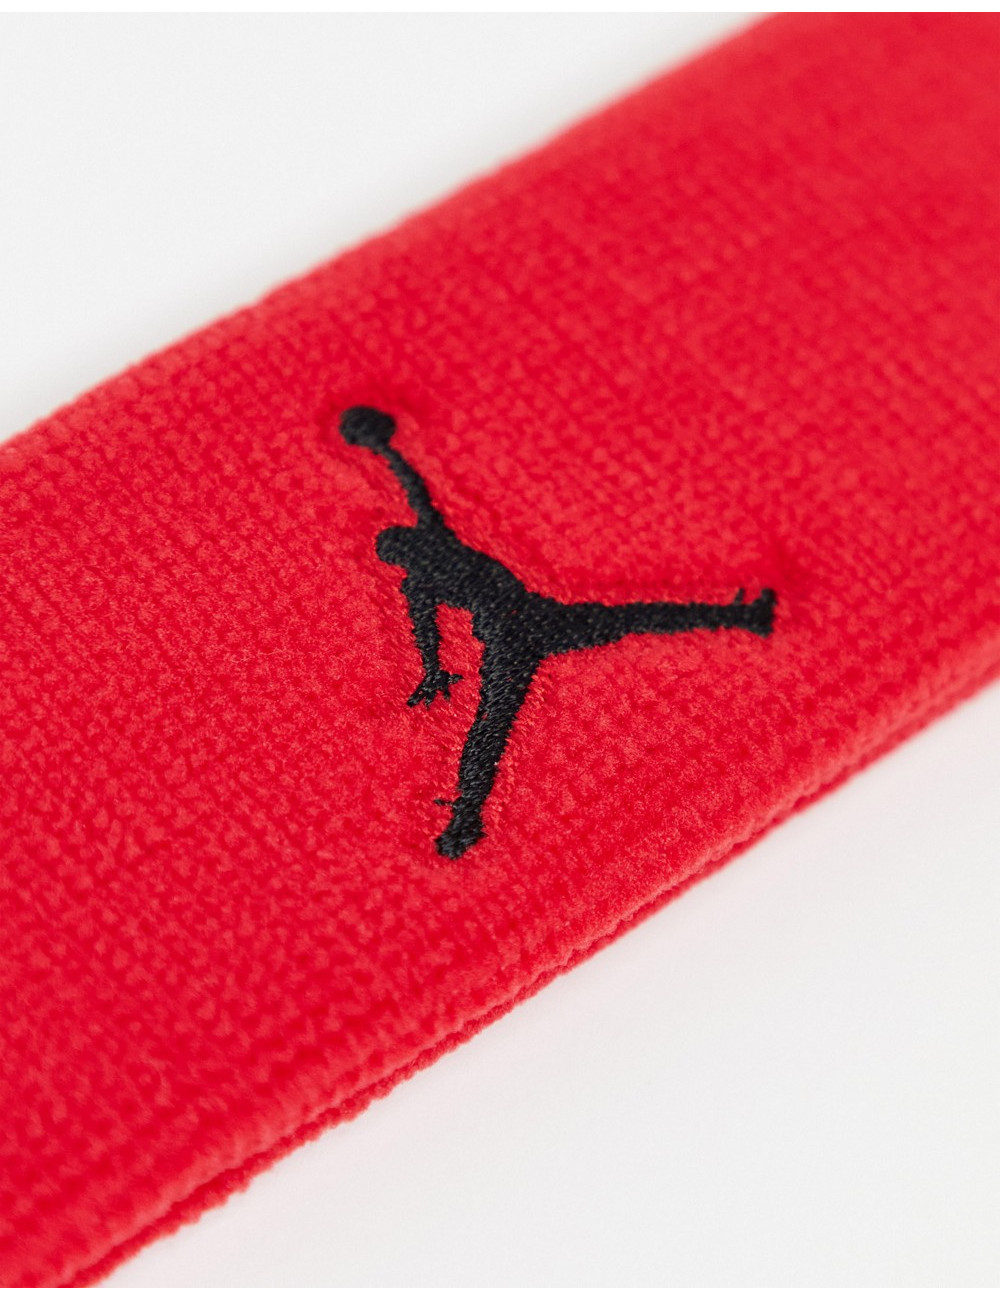 Nike Jordan headband in red